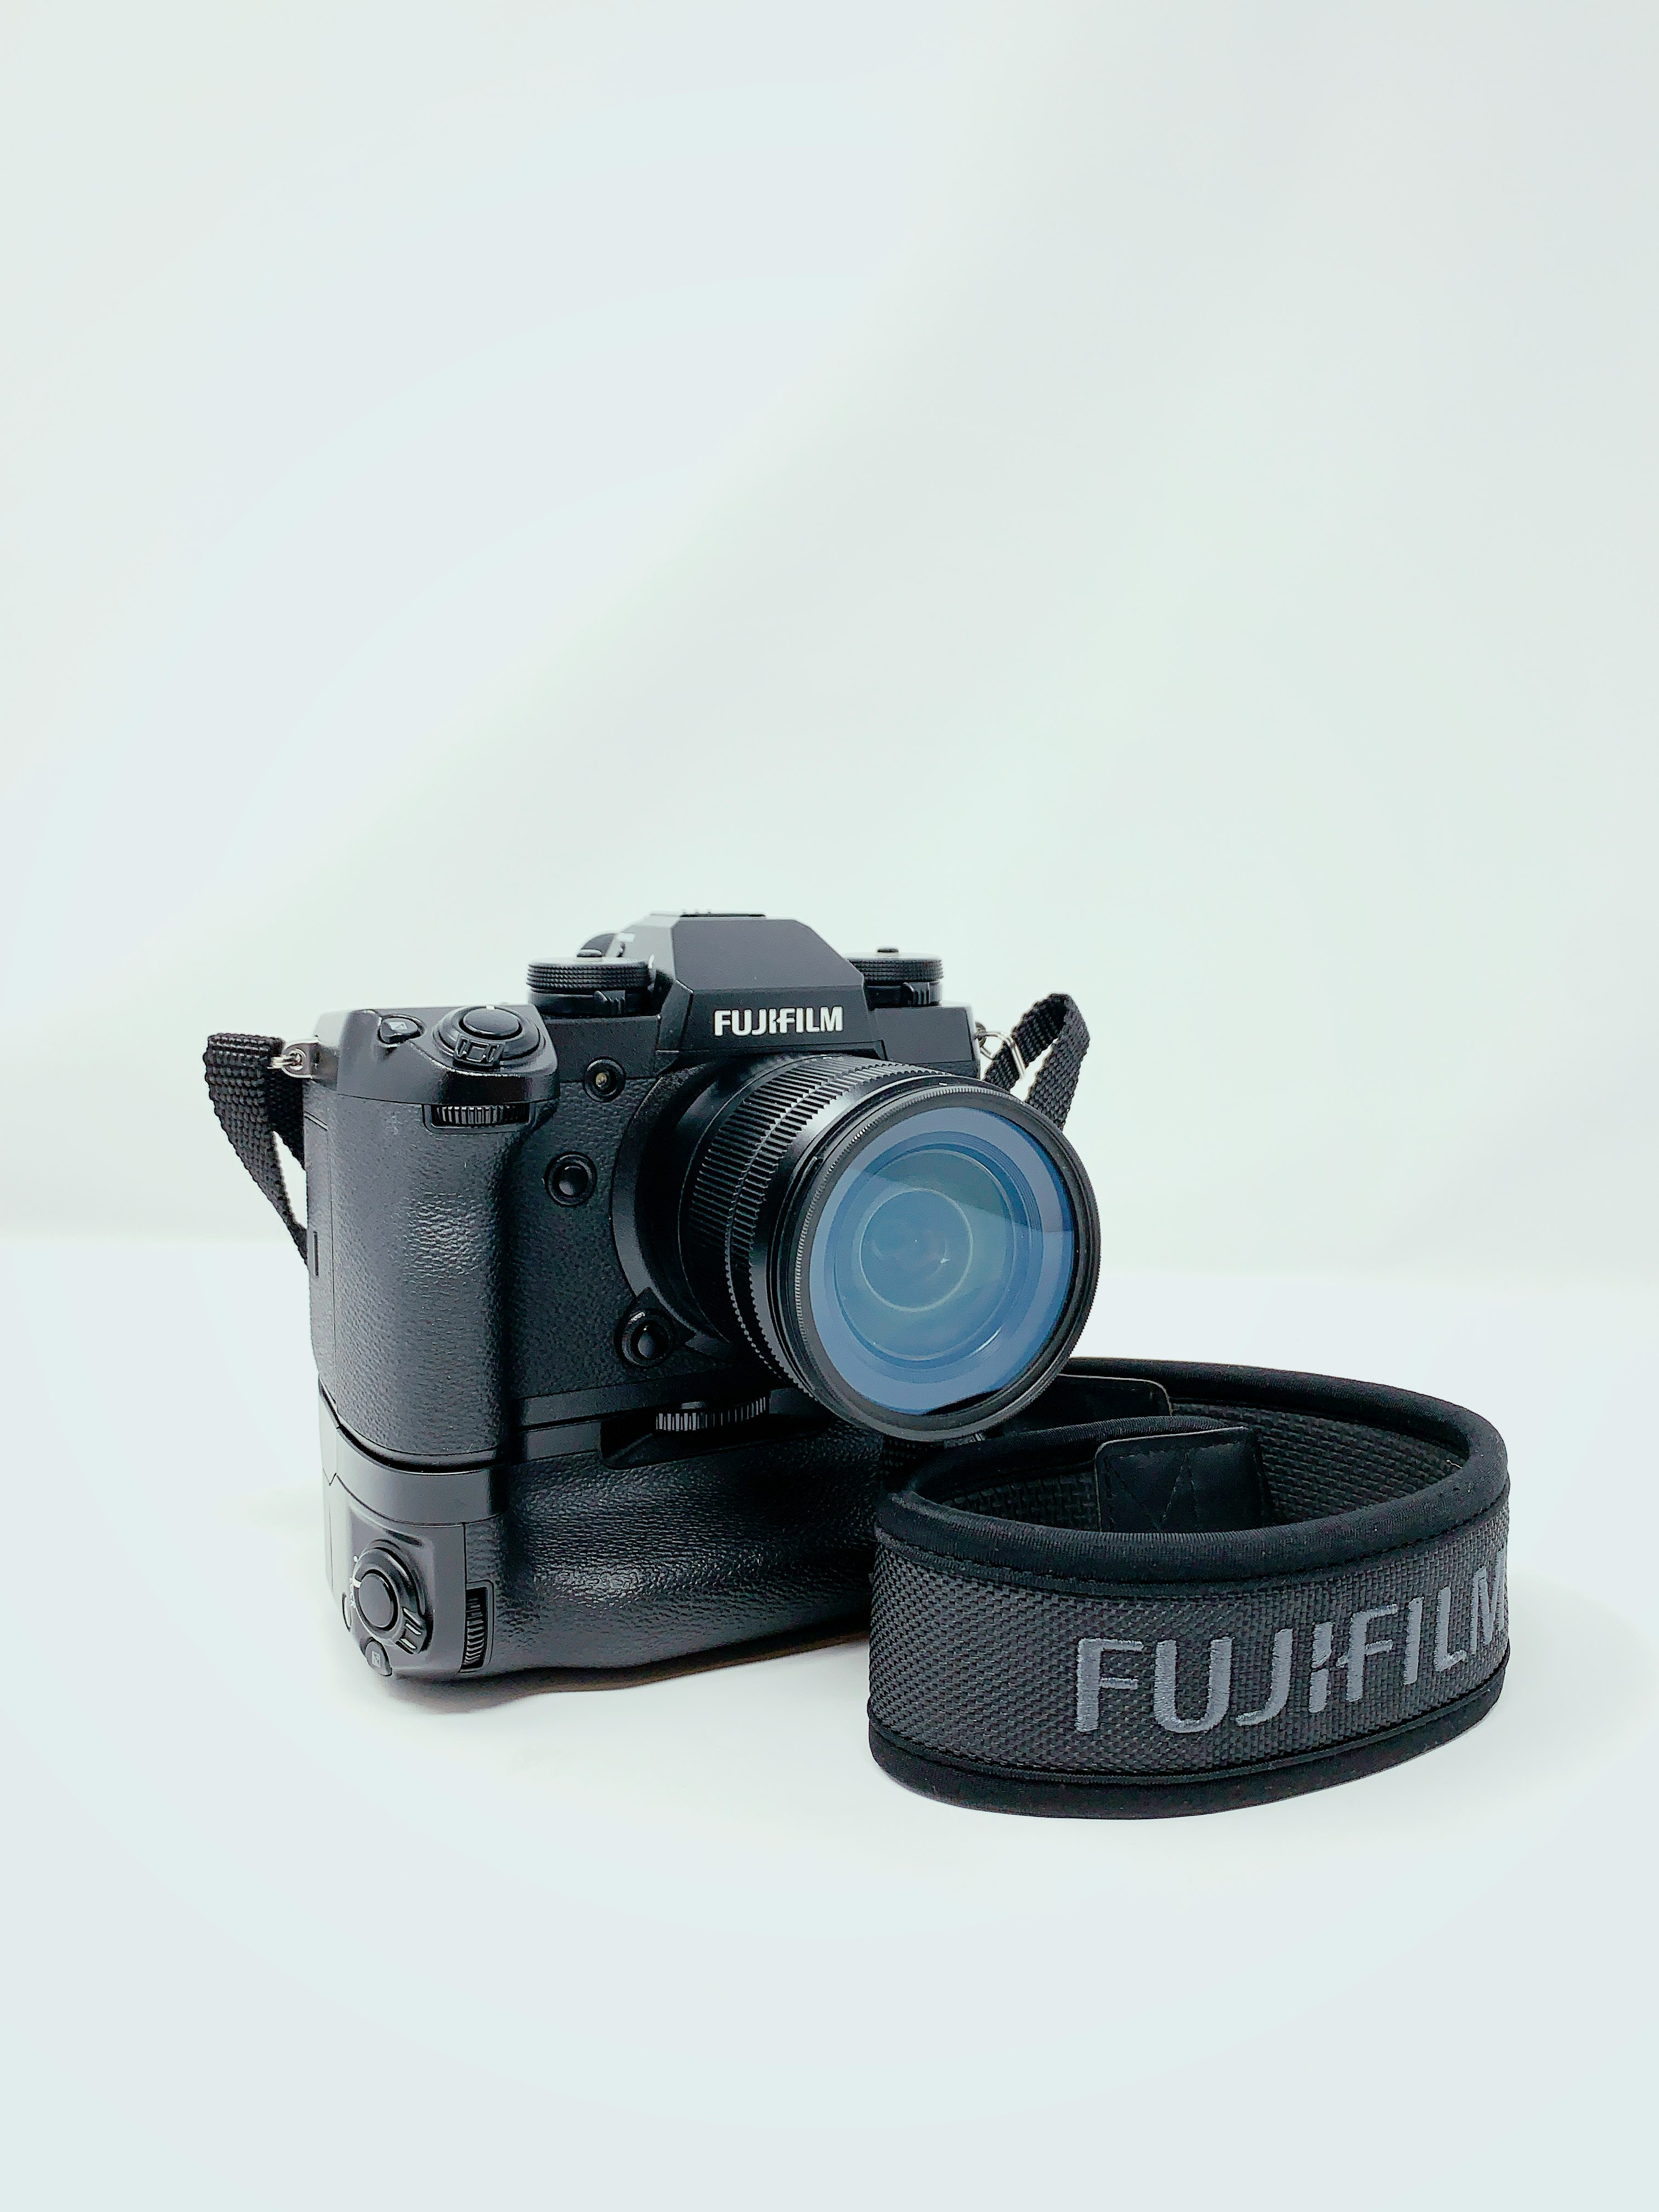 lack Fujifilm DSLR camera